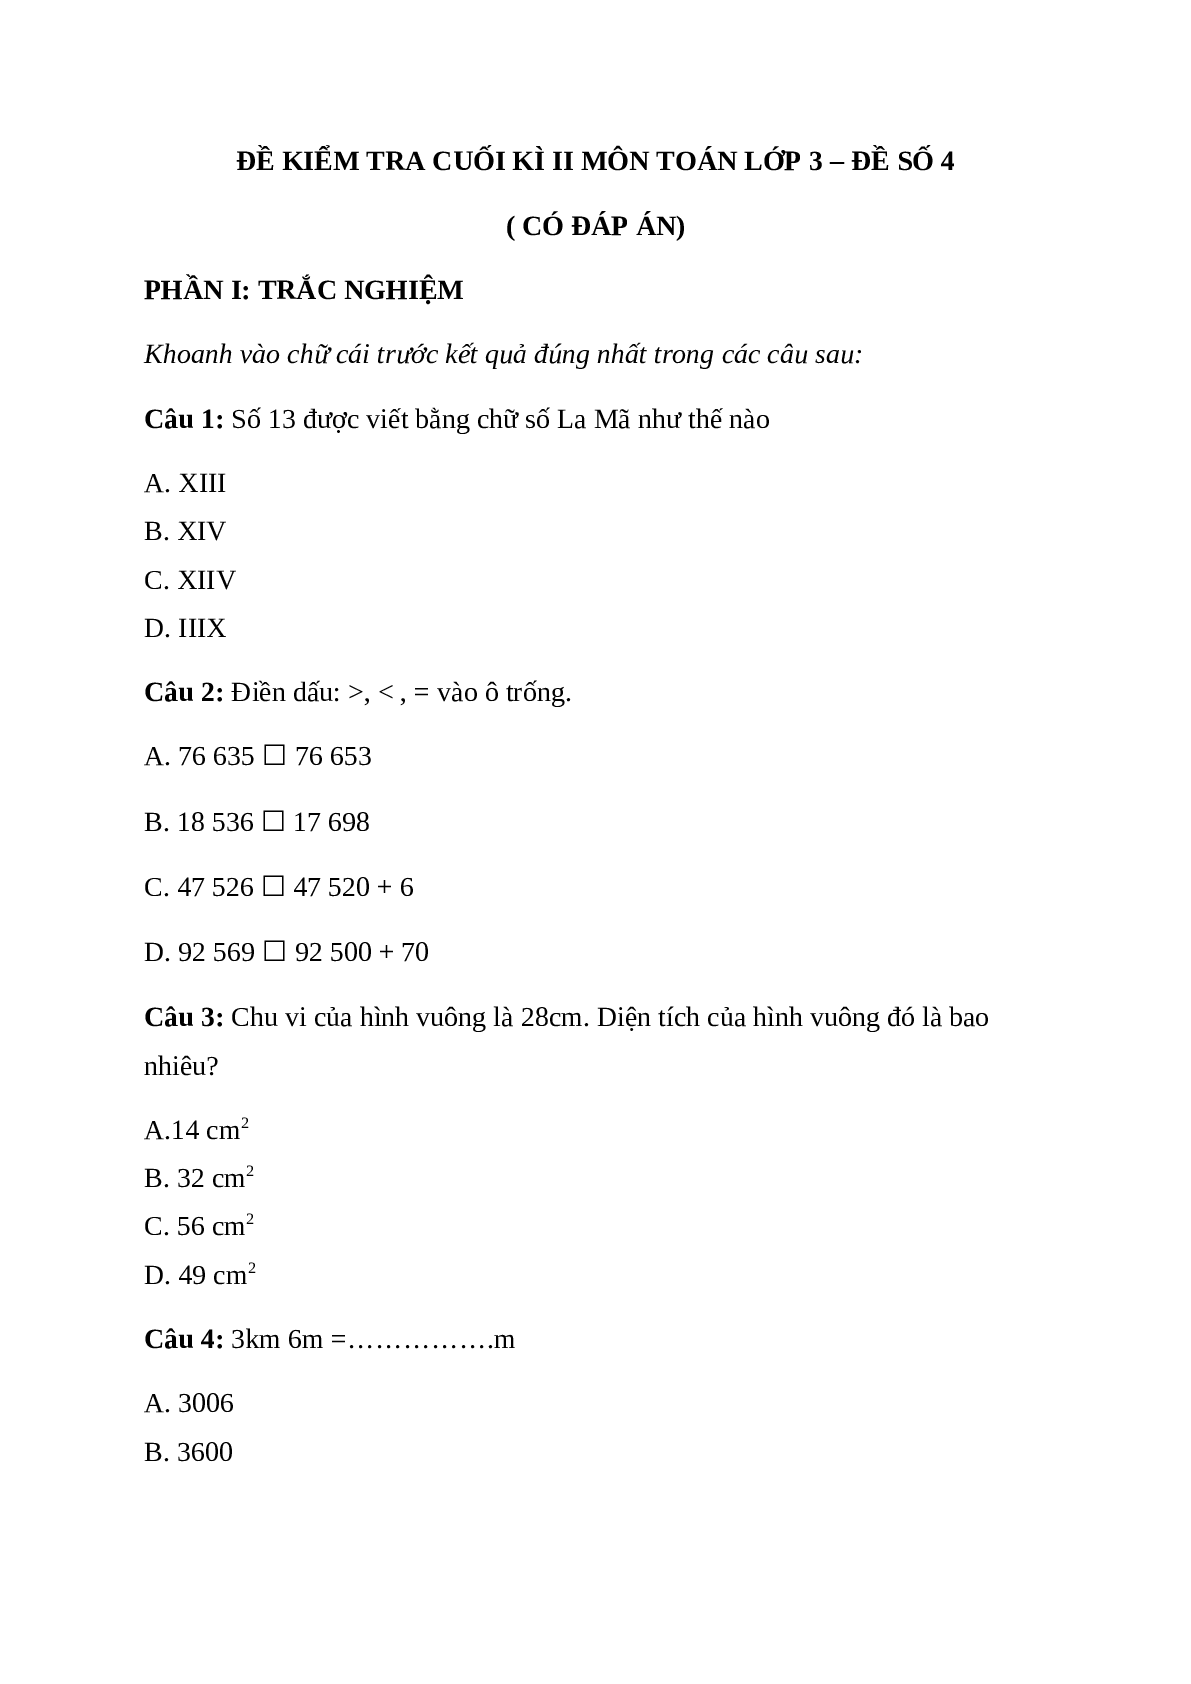 Đề thi cuối kì 2 môn Toán lớp 3 có đáp án - đề 4 (trang 1)